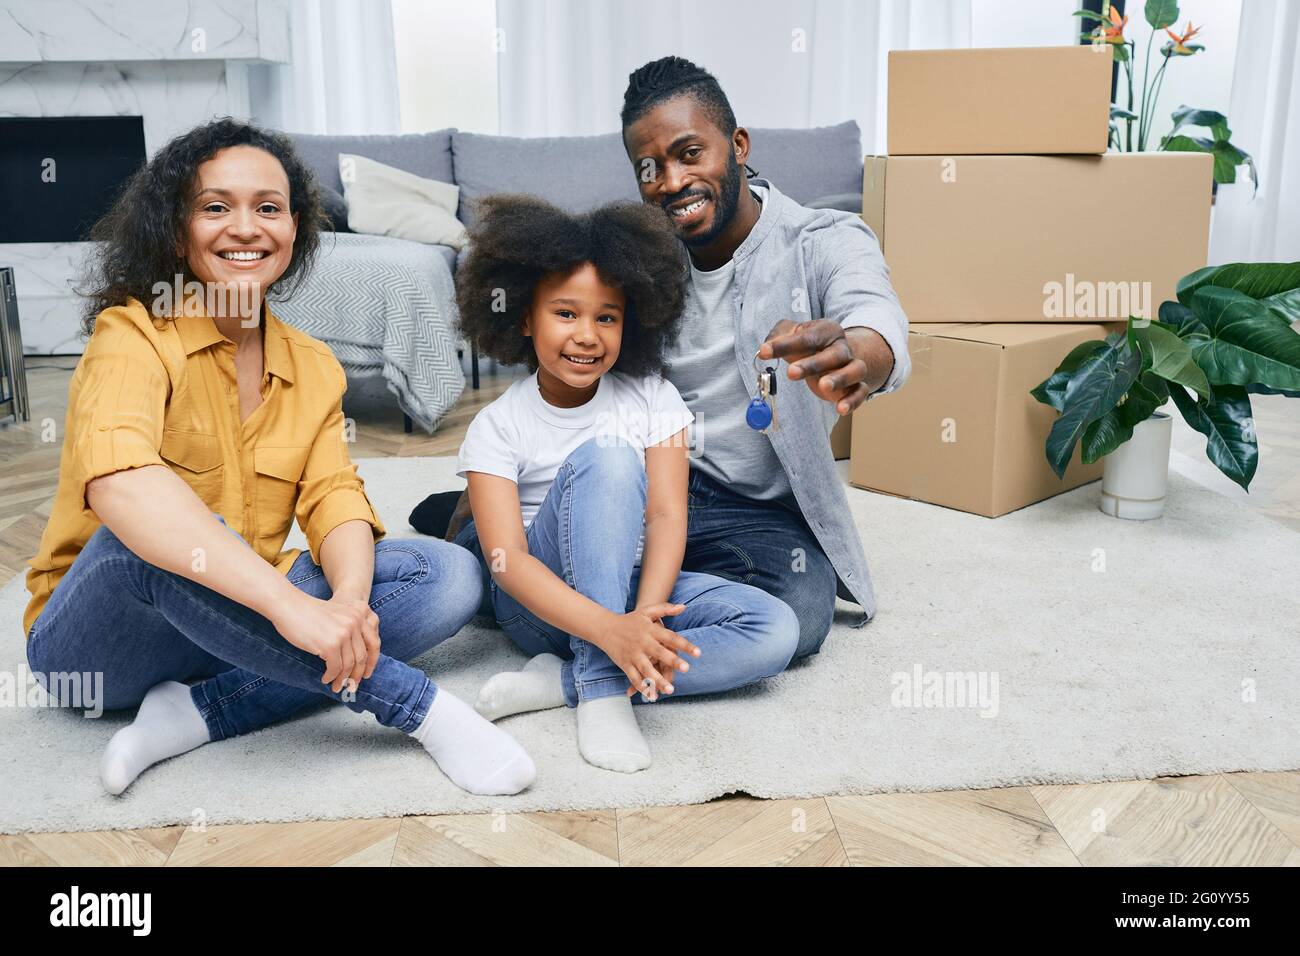 La famille afro-américaine s'installe dans une nouvelle maison. Le père, la mère et la fille sont heureux de s'asseoir sur un plancher de maison après avoir déballé les choses. Achat ou renti Banque D'Images